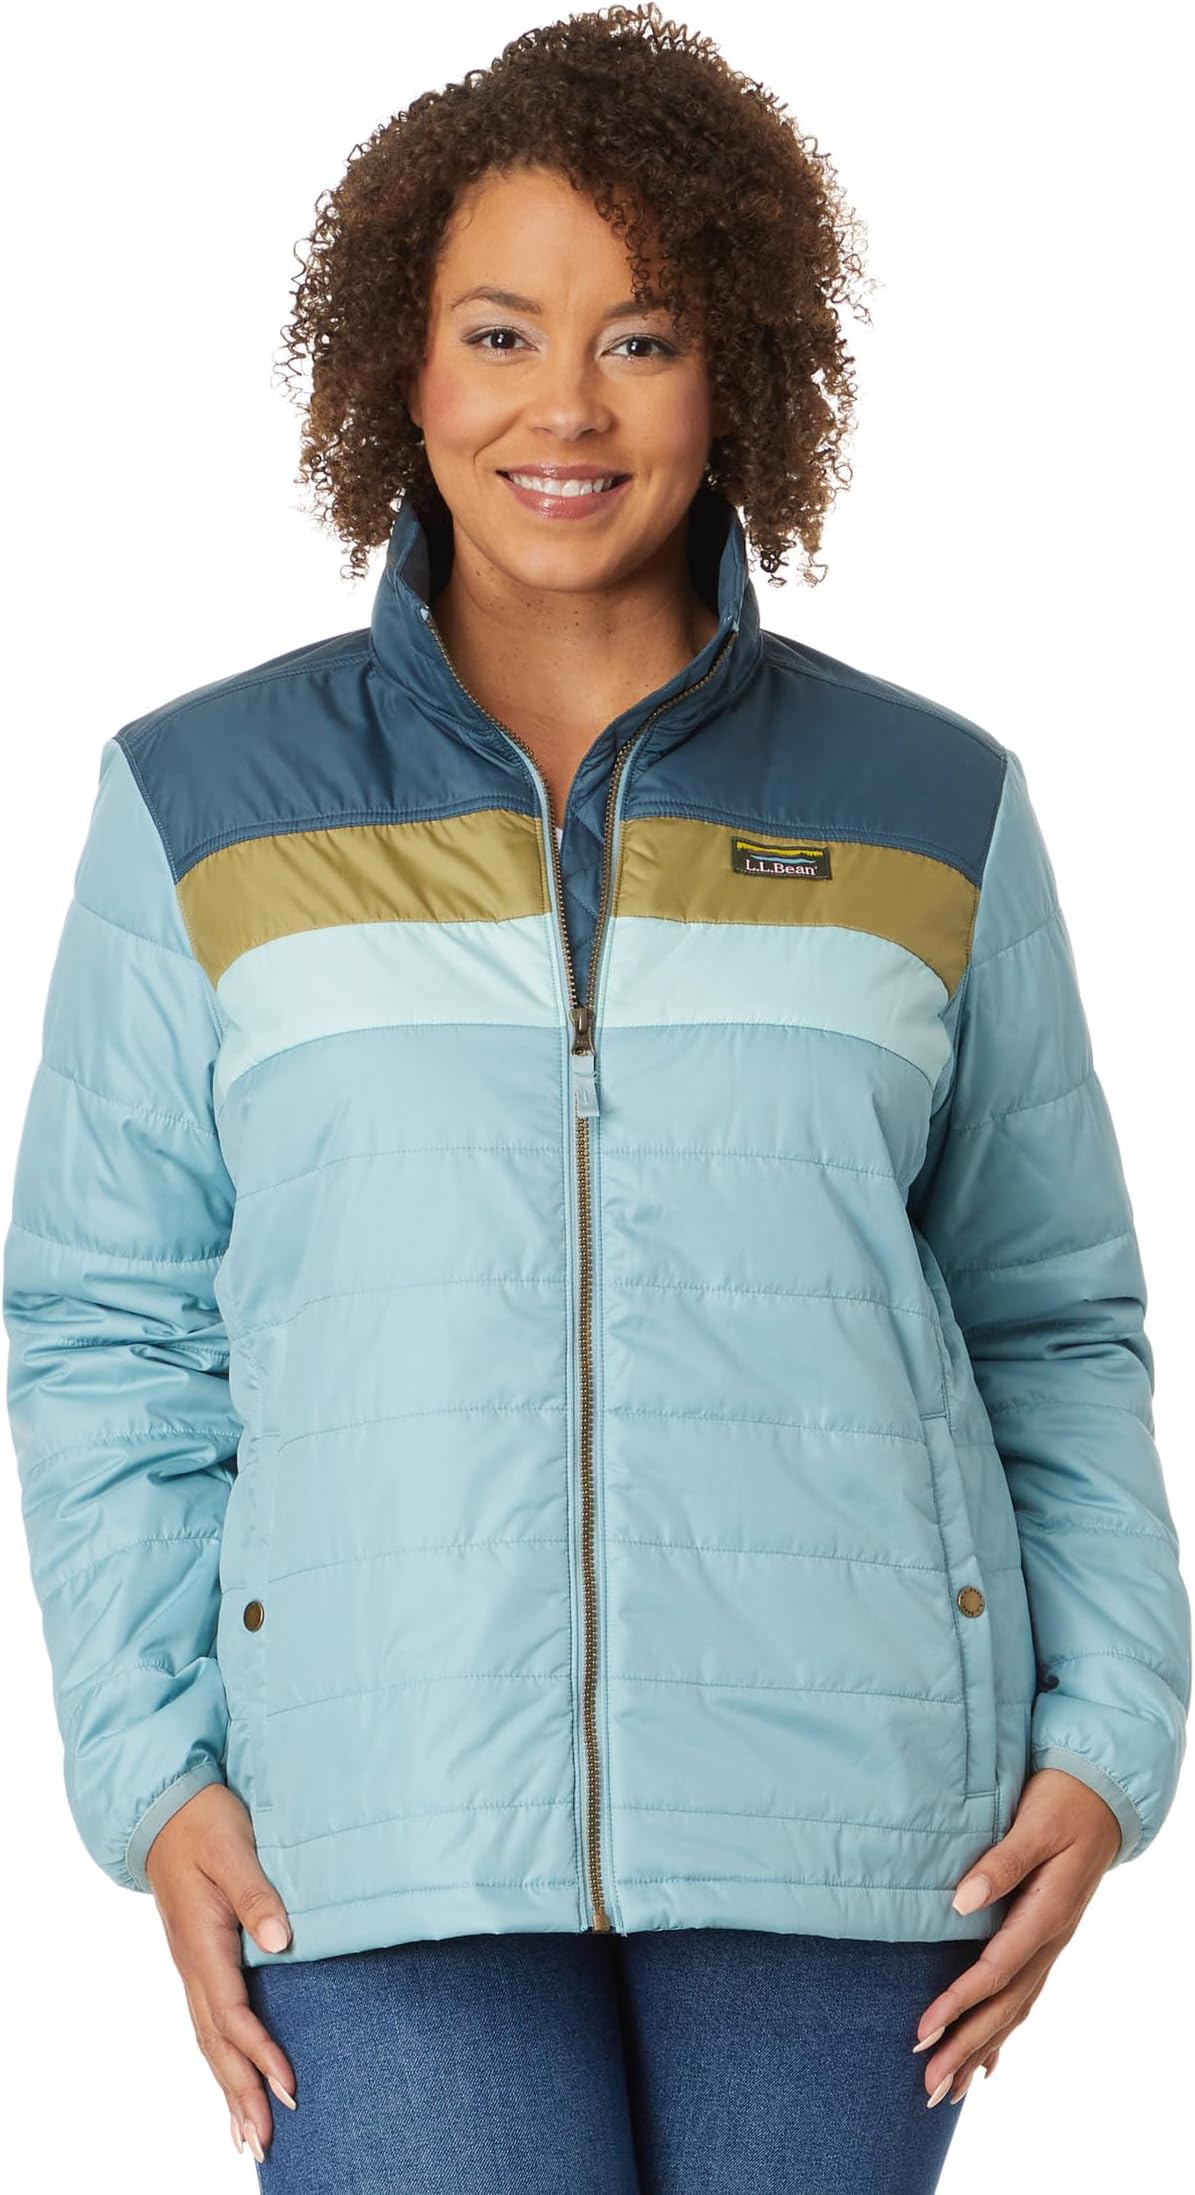 Классическая куртка-пуховик Mountain больших размеров в стиле колор-блок L.L.Bean, цвет Storm Blue/Steel Blue